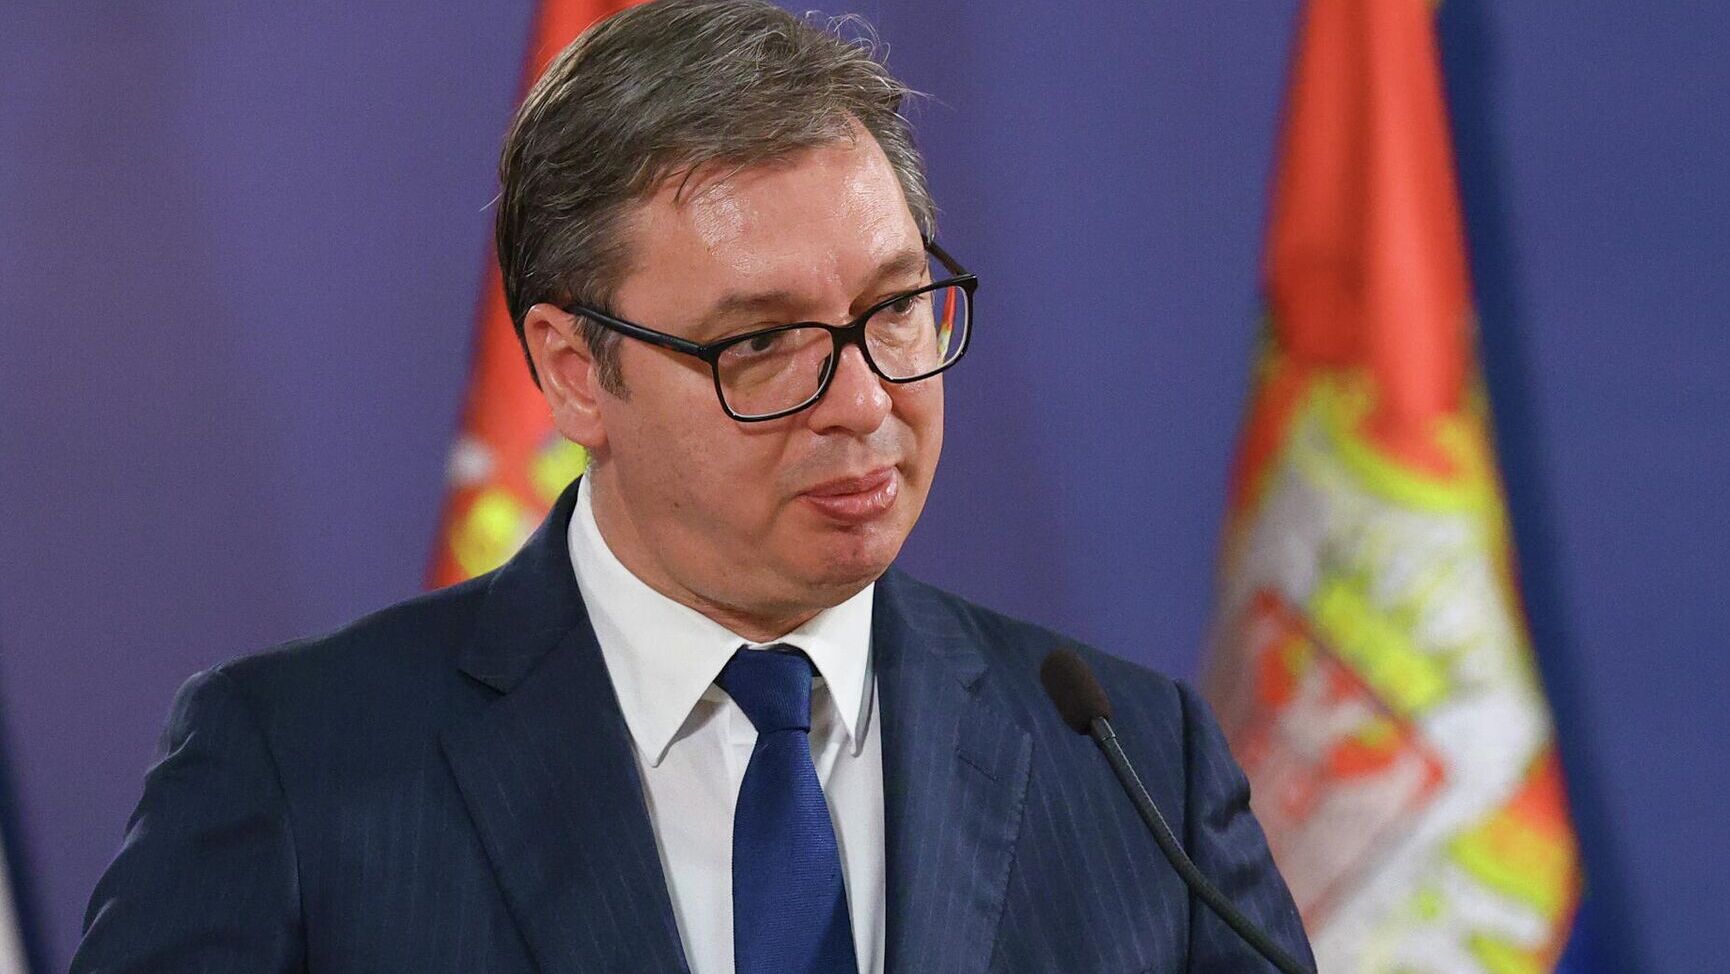 Вучич заявил, что Путин не звонит ему во избежание усиления давления на Сербию